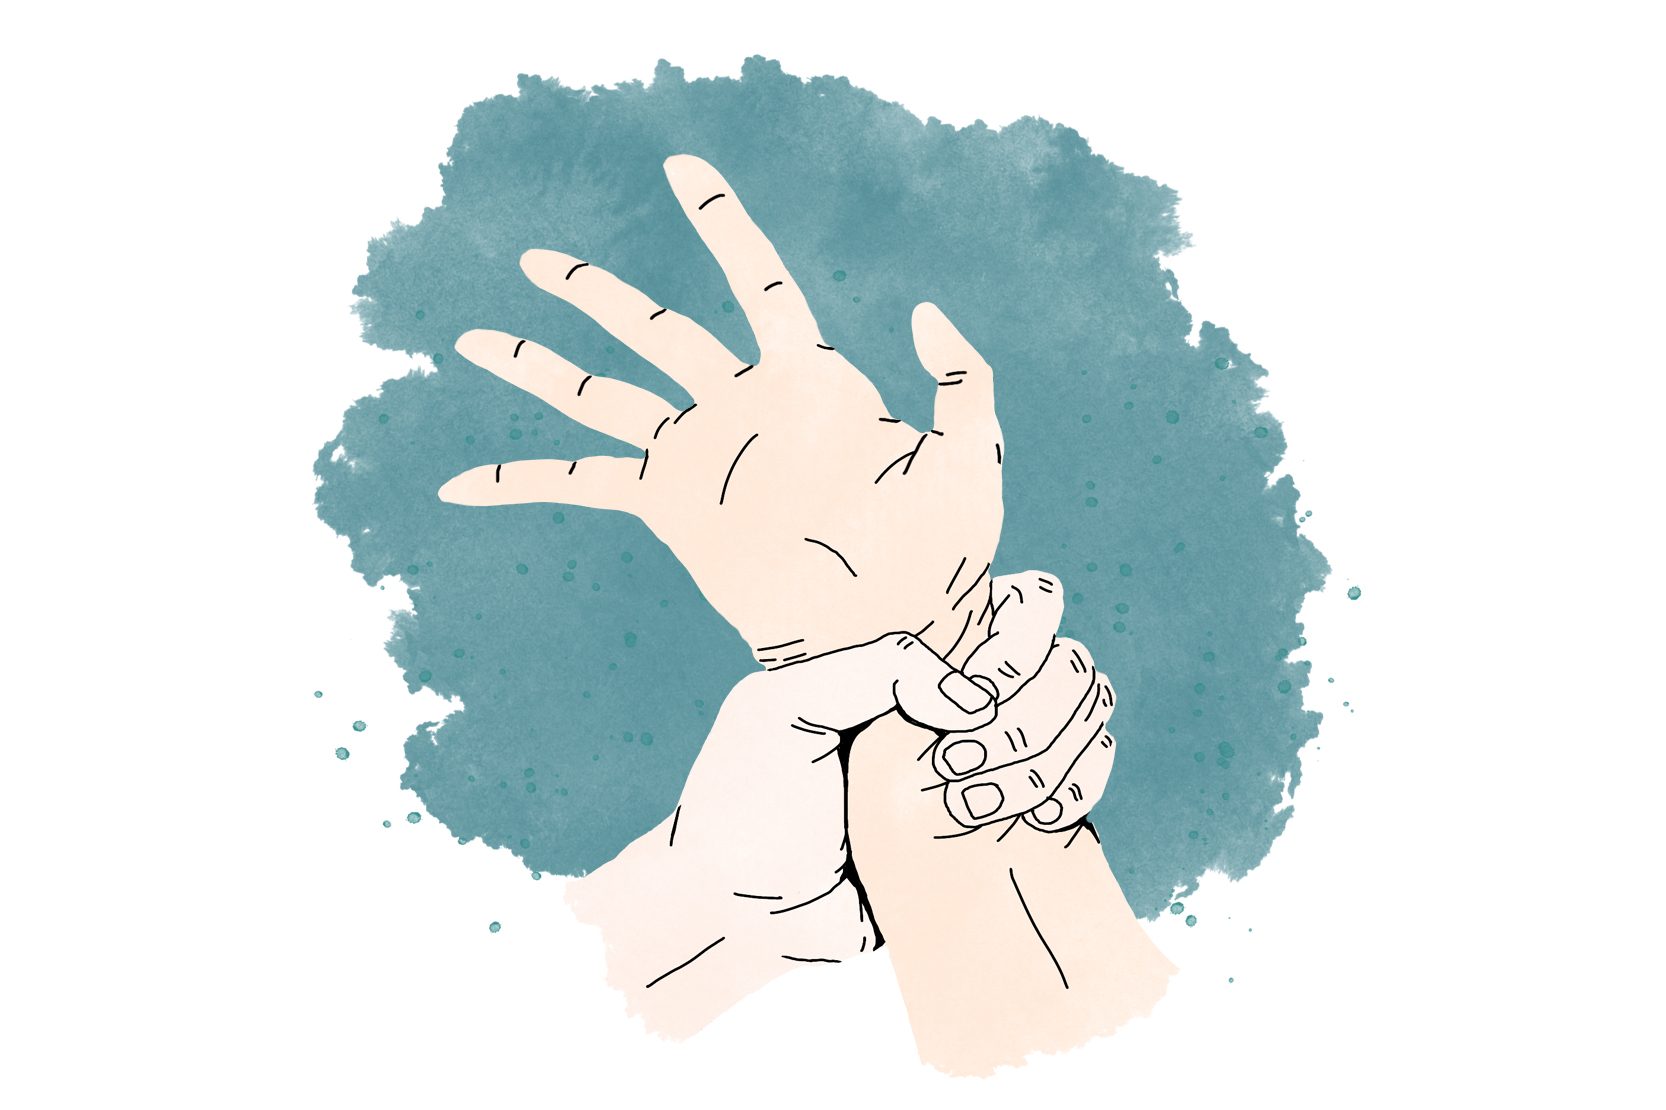 En hand håller hårt om någon annans handled. Illustration.